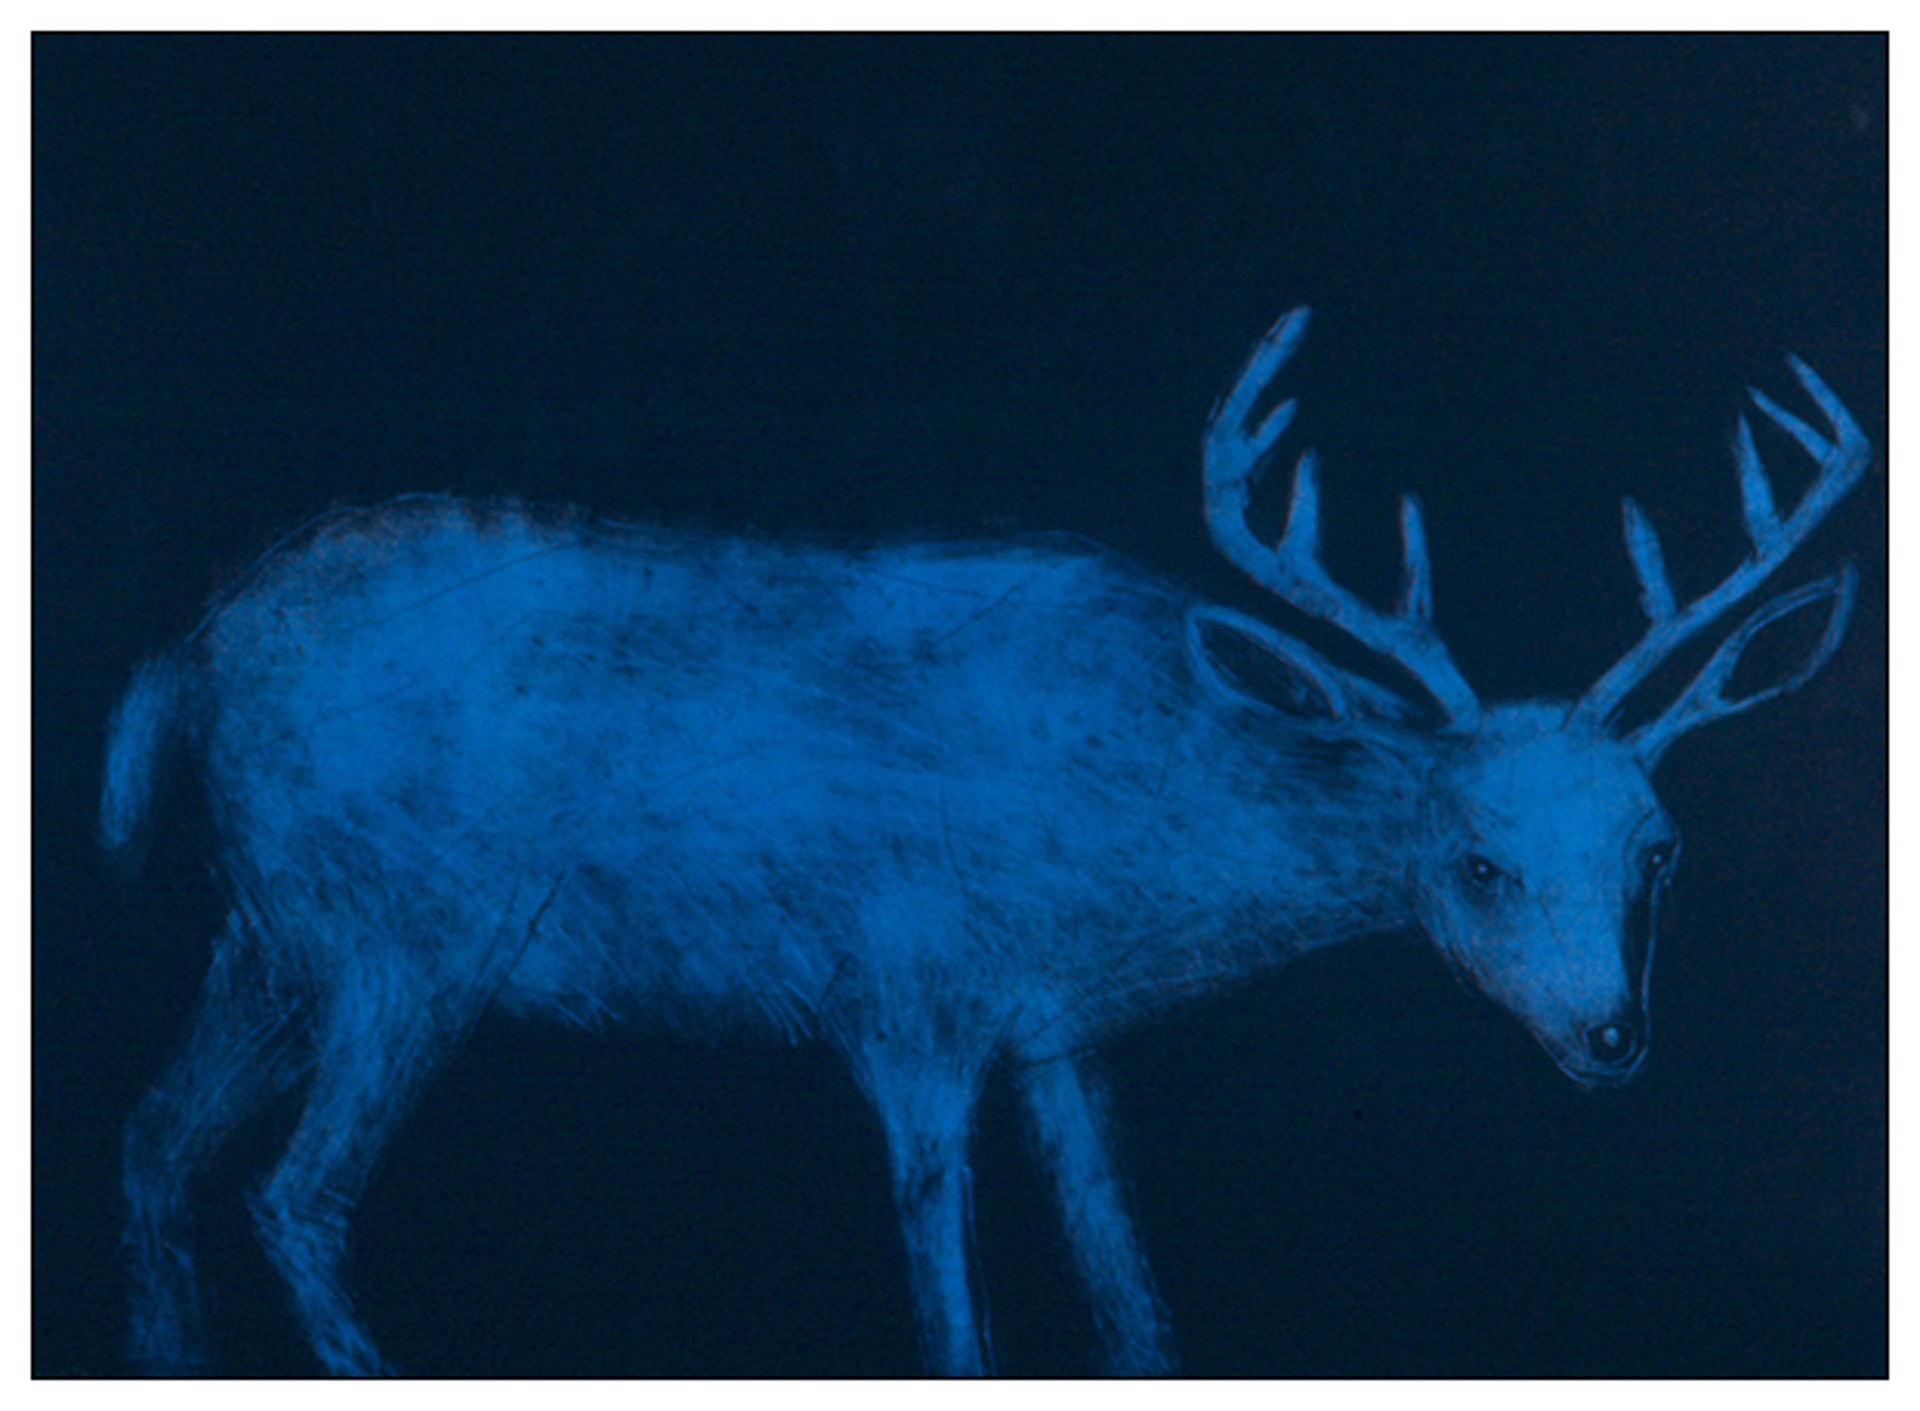 Night Deer by Paula Schuette Kraemer